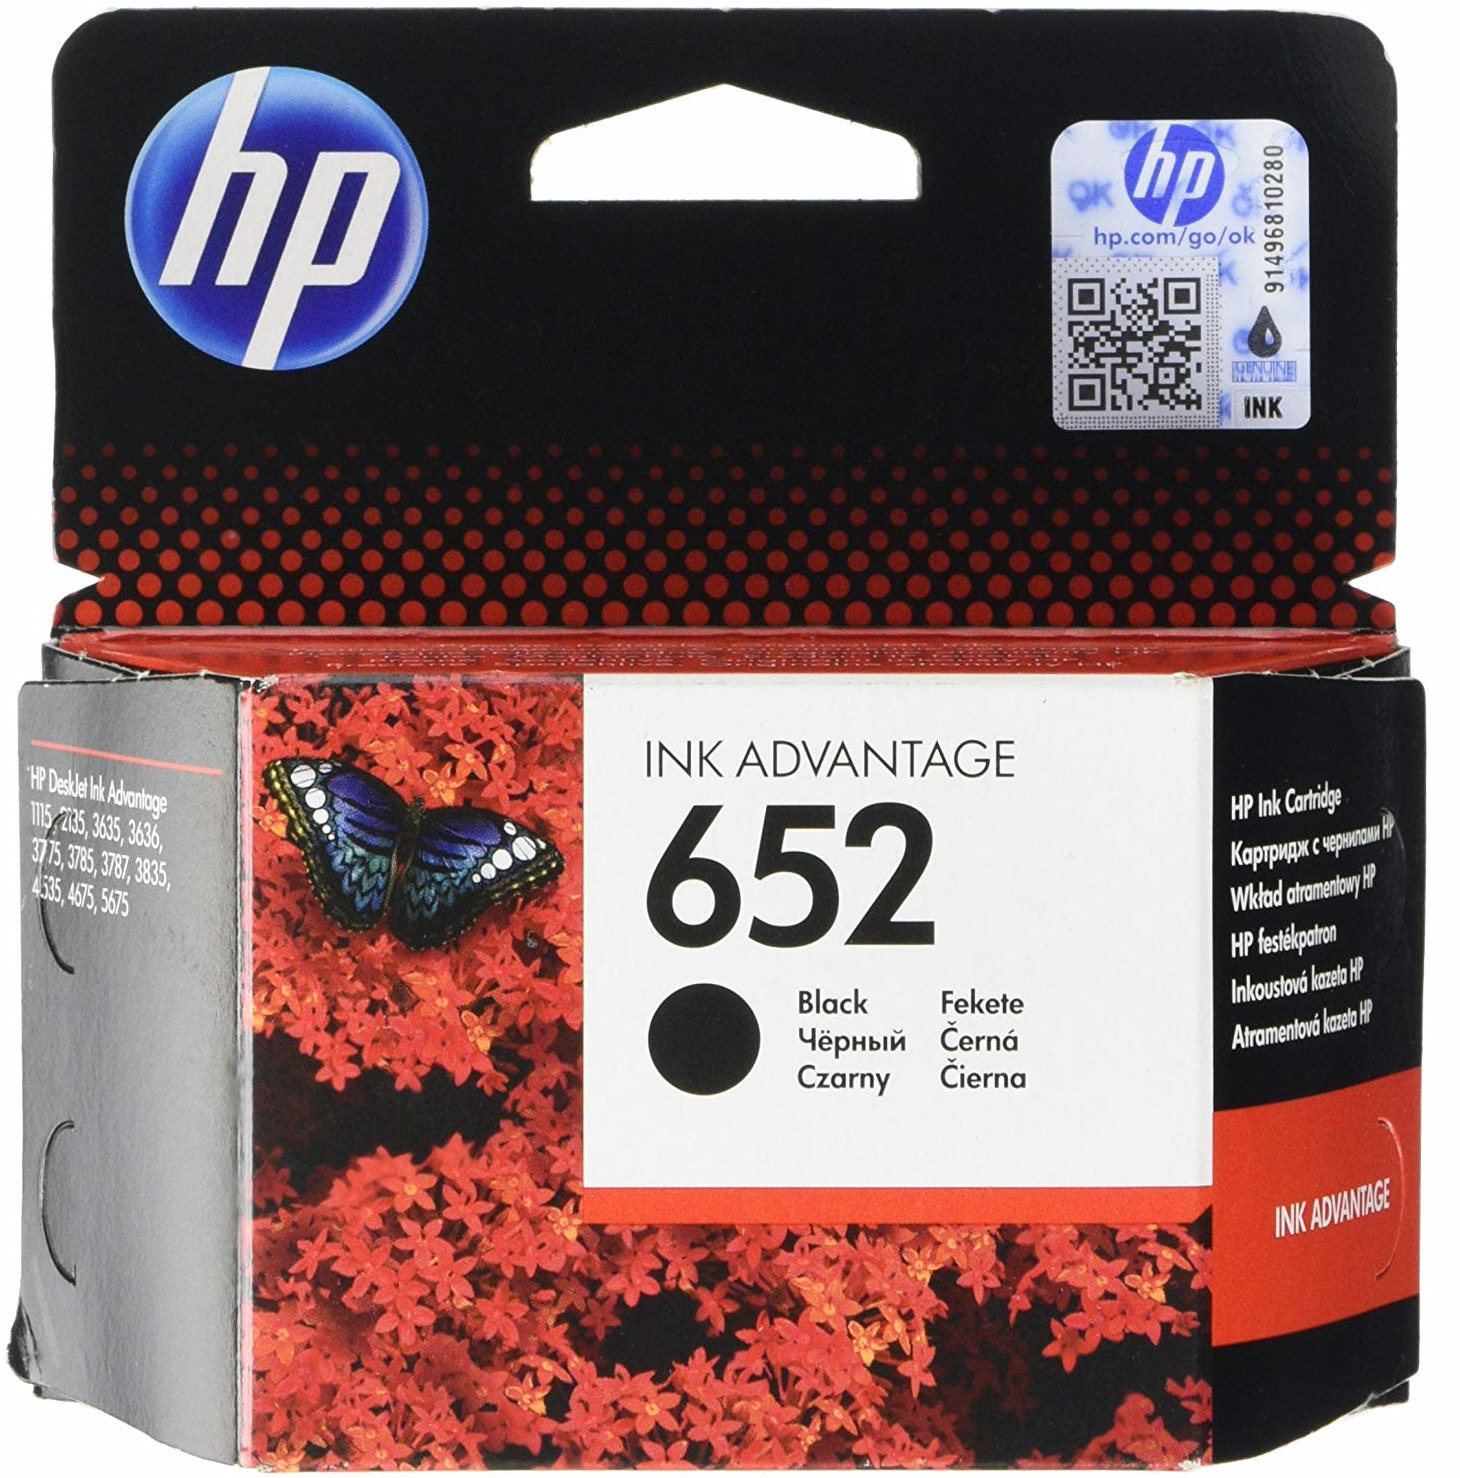 фото Картридж HP F6V25AE BHK 652, черный, для струйного принтера, оригинал